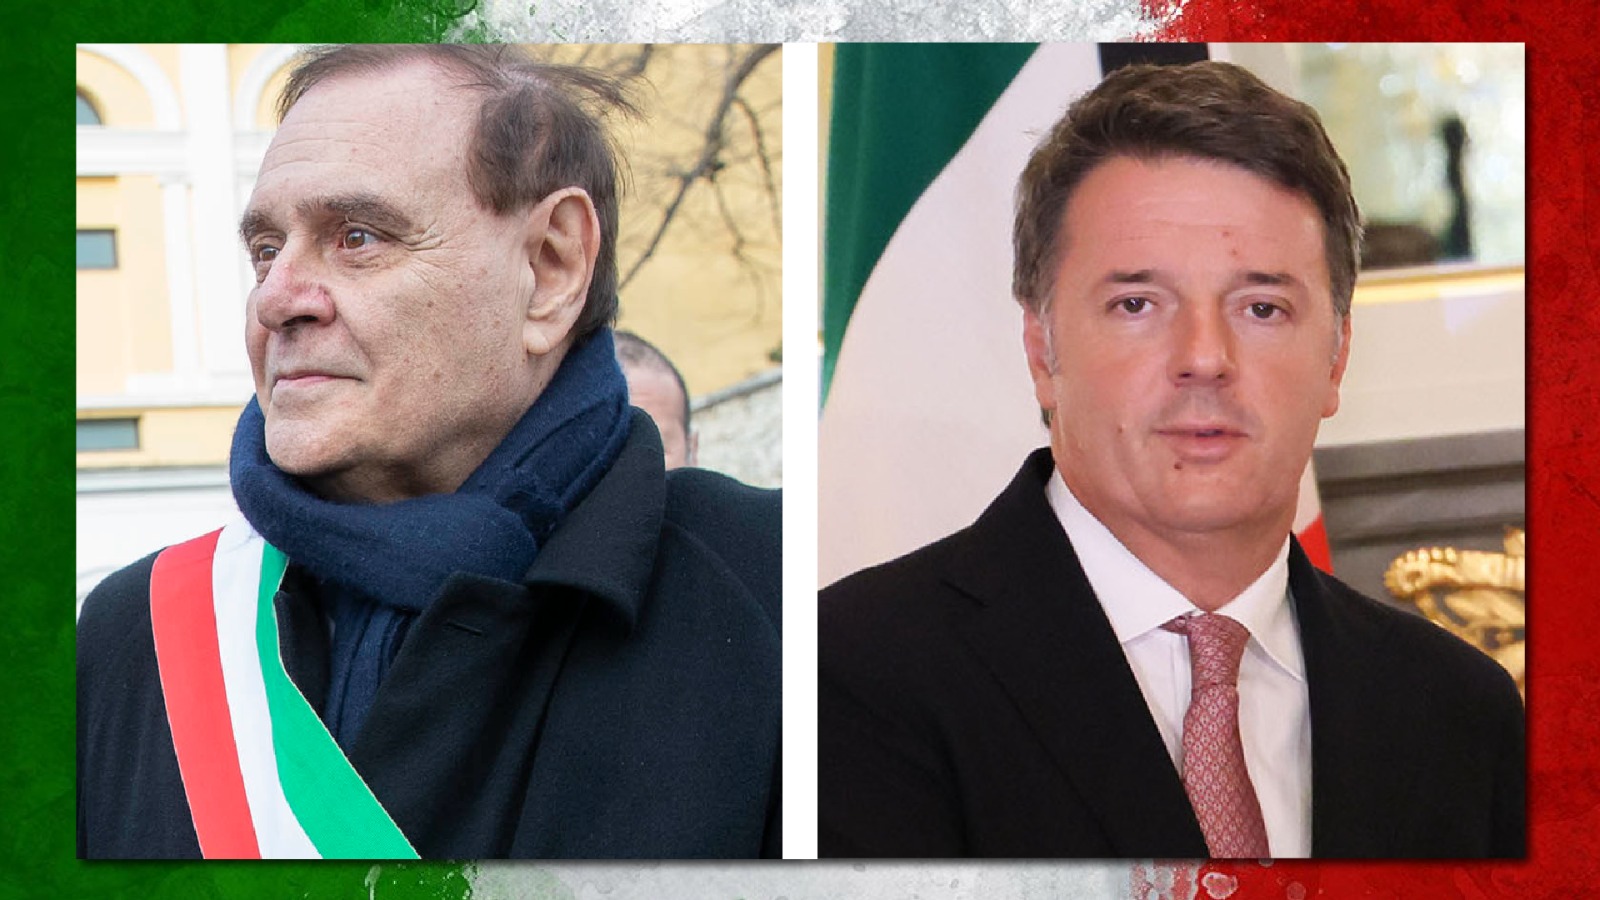 Europee, Mastella: “Io con Renzi? Ne abbiamo parlato, vediamo..”